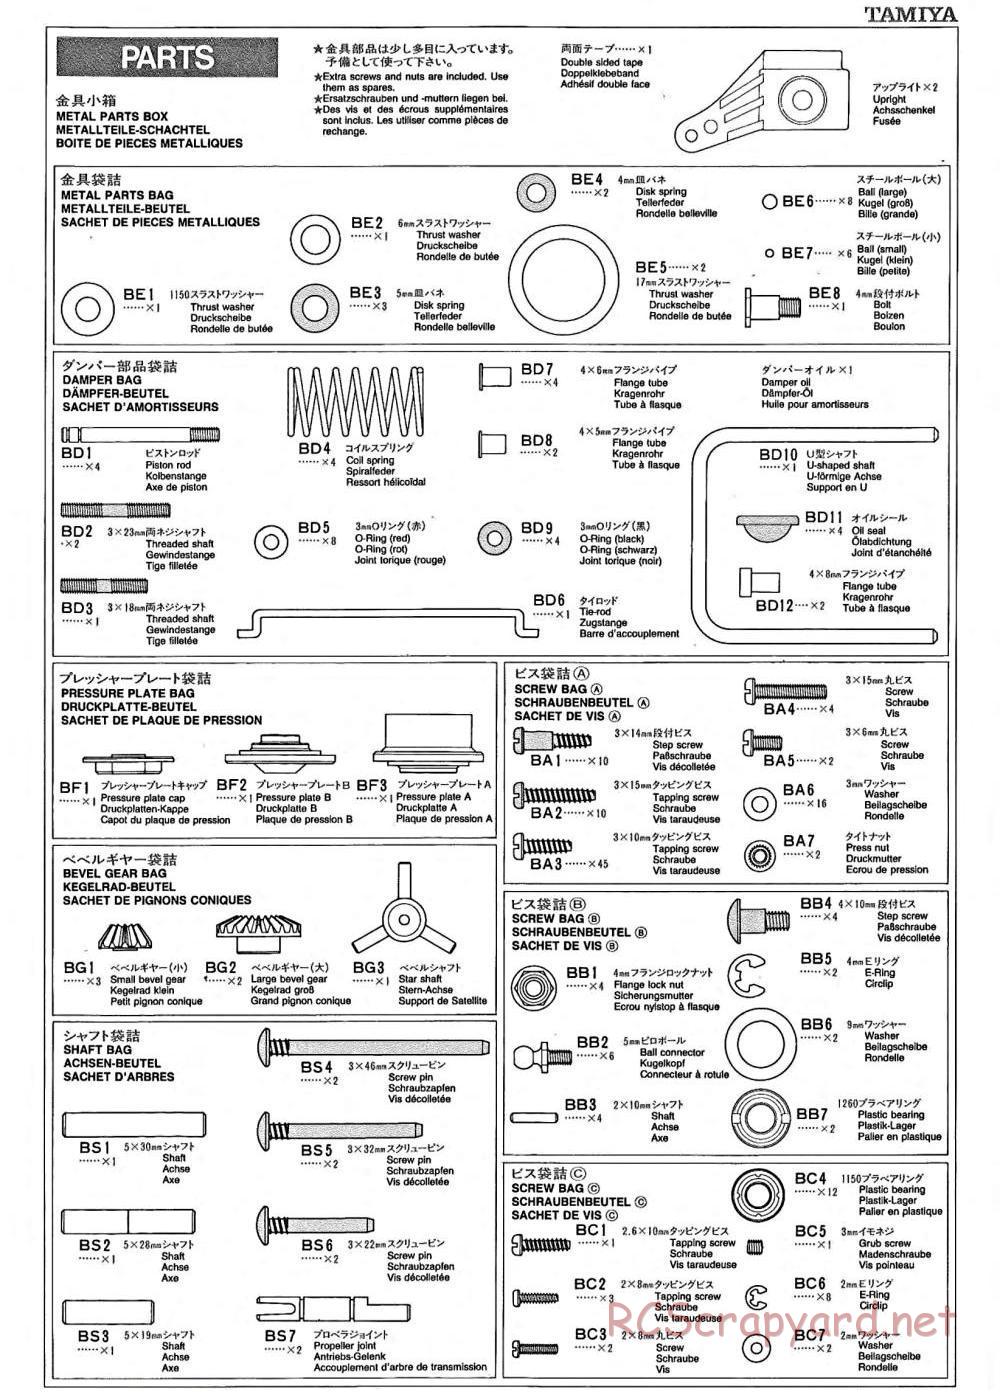 Tamiya - TA-02 Chassis - Manual - Page 15